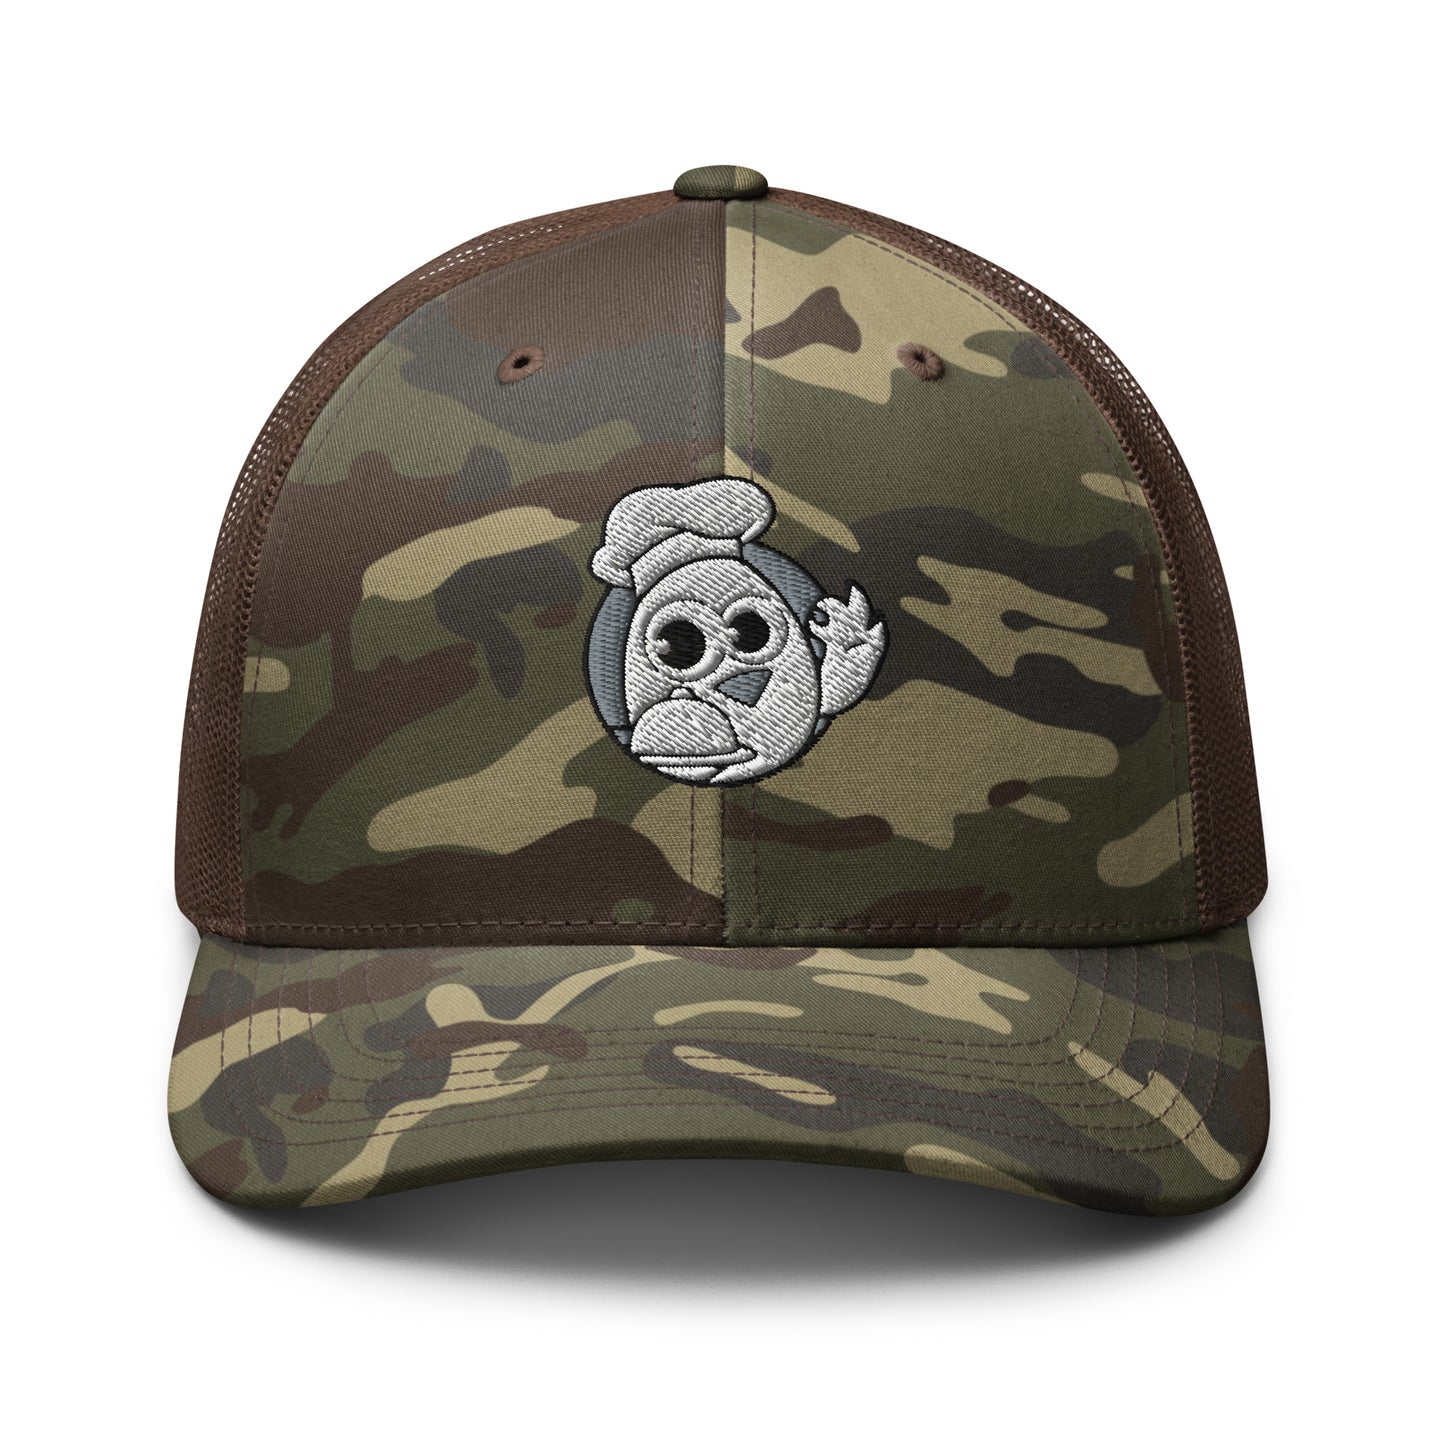 Camouflage chef/trucker hat